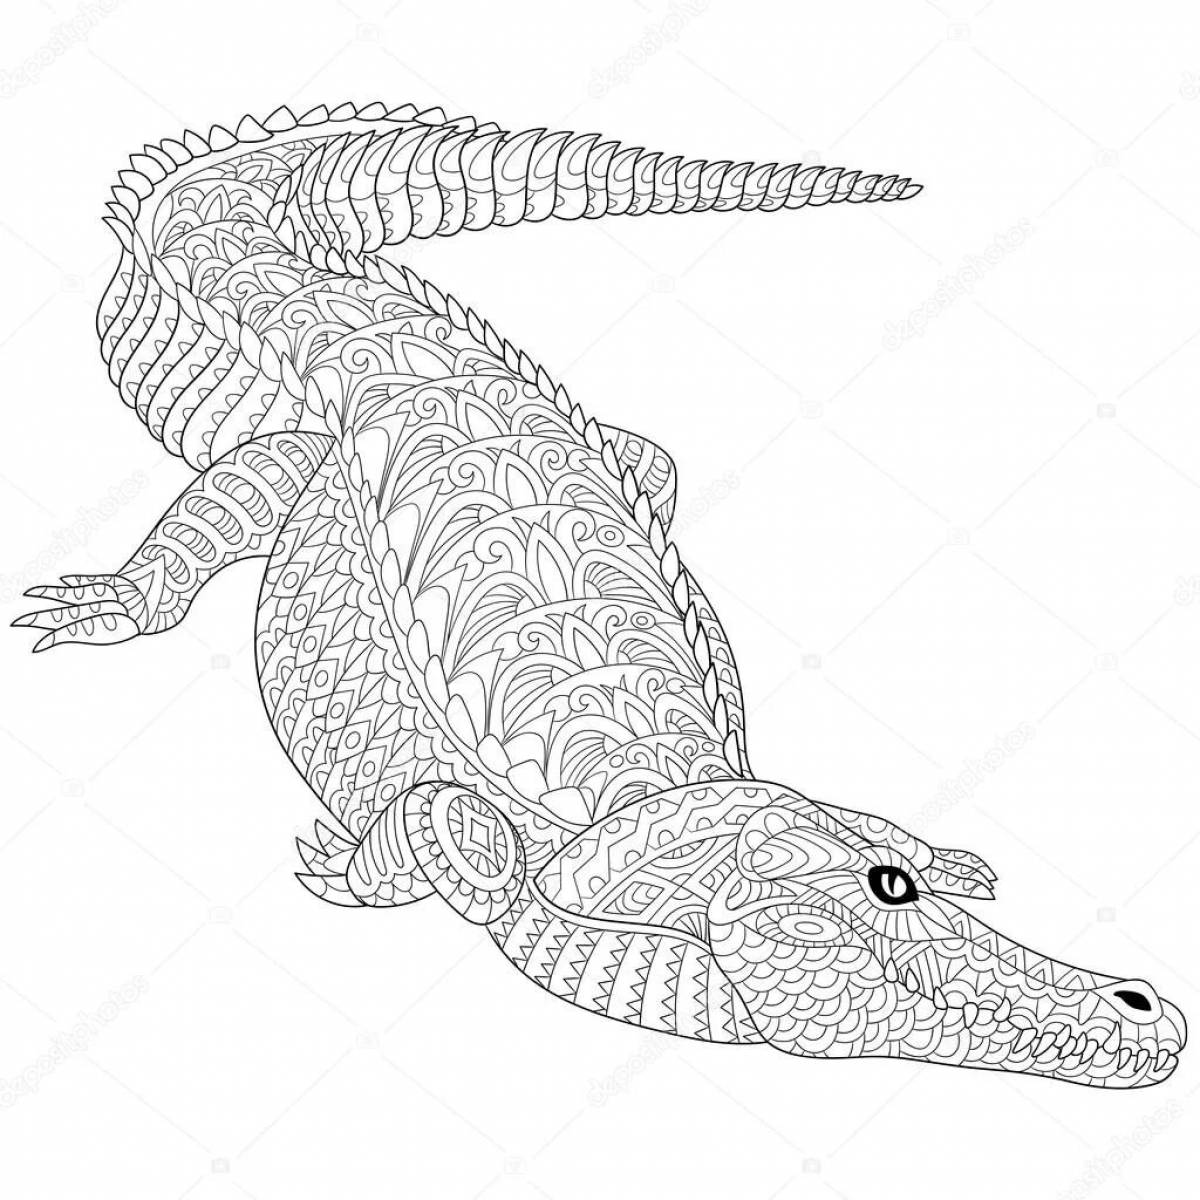 Colouring calm crocodile antistress